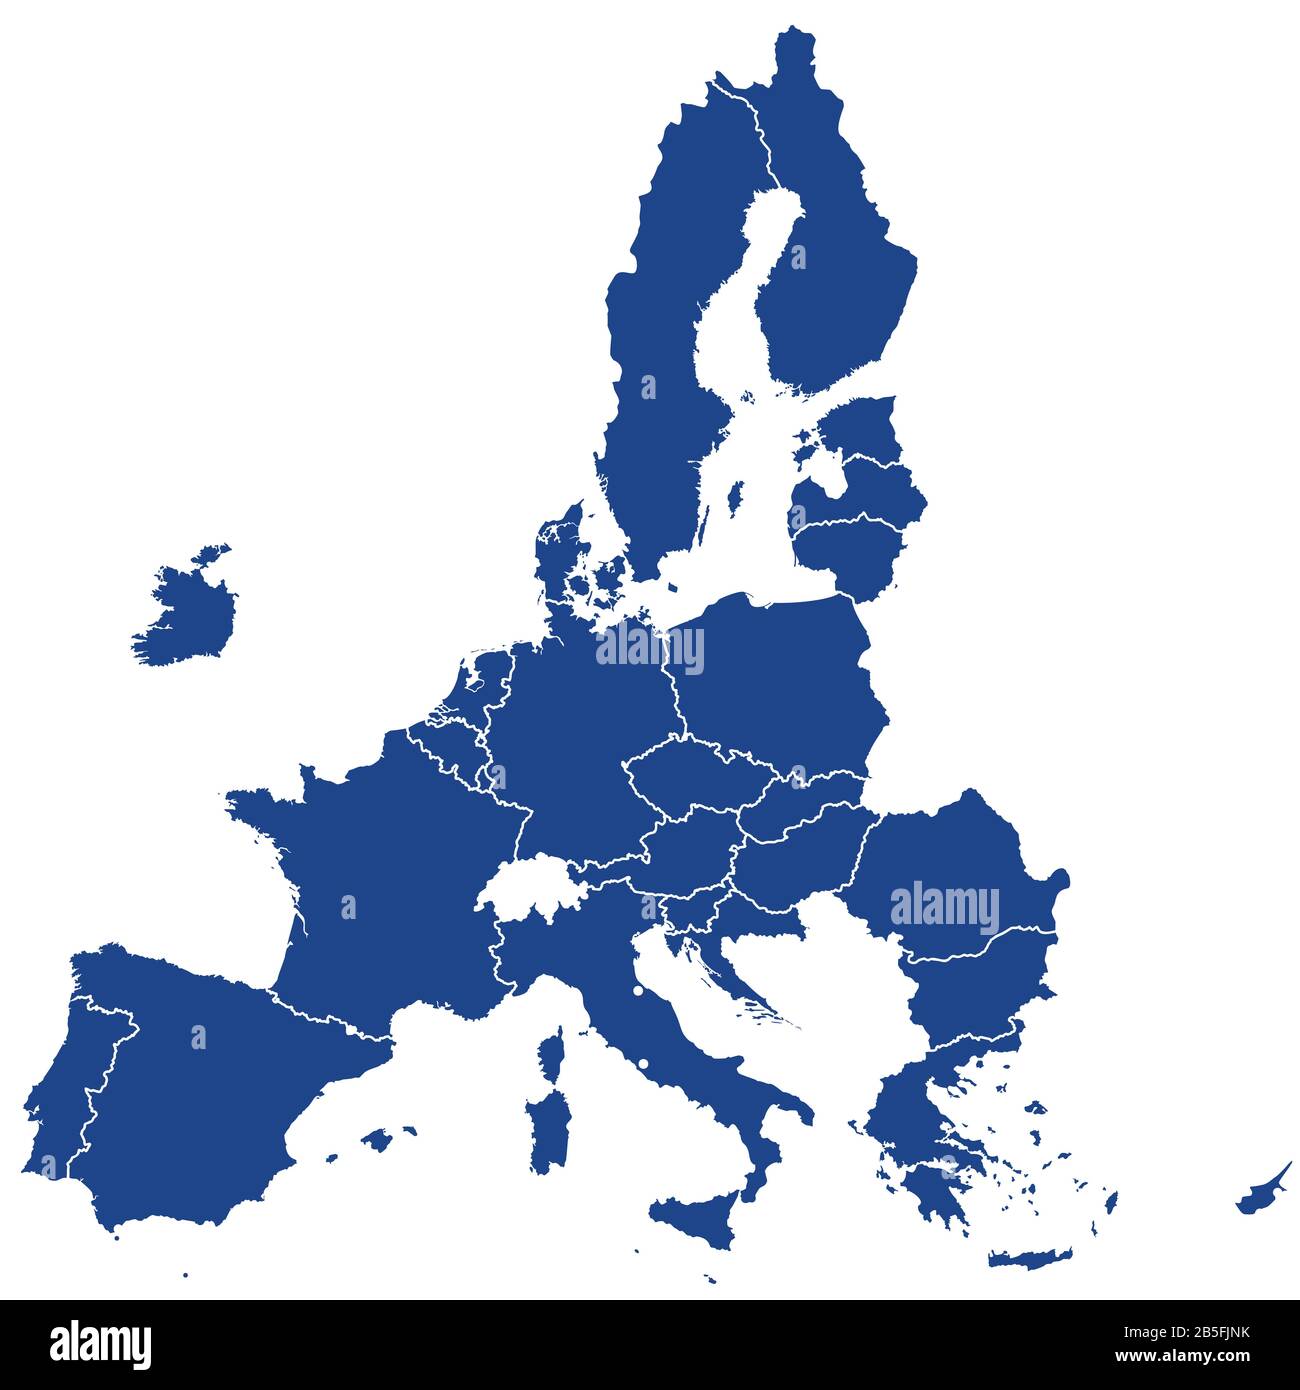 Les États membres de l’Union européenne après le Brexit, silhouettes bleues. 27 Etats membres de l'UE après la gauche du Royaume-Uni en 2020. Banque D'Images